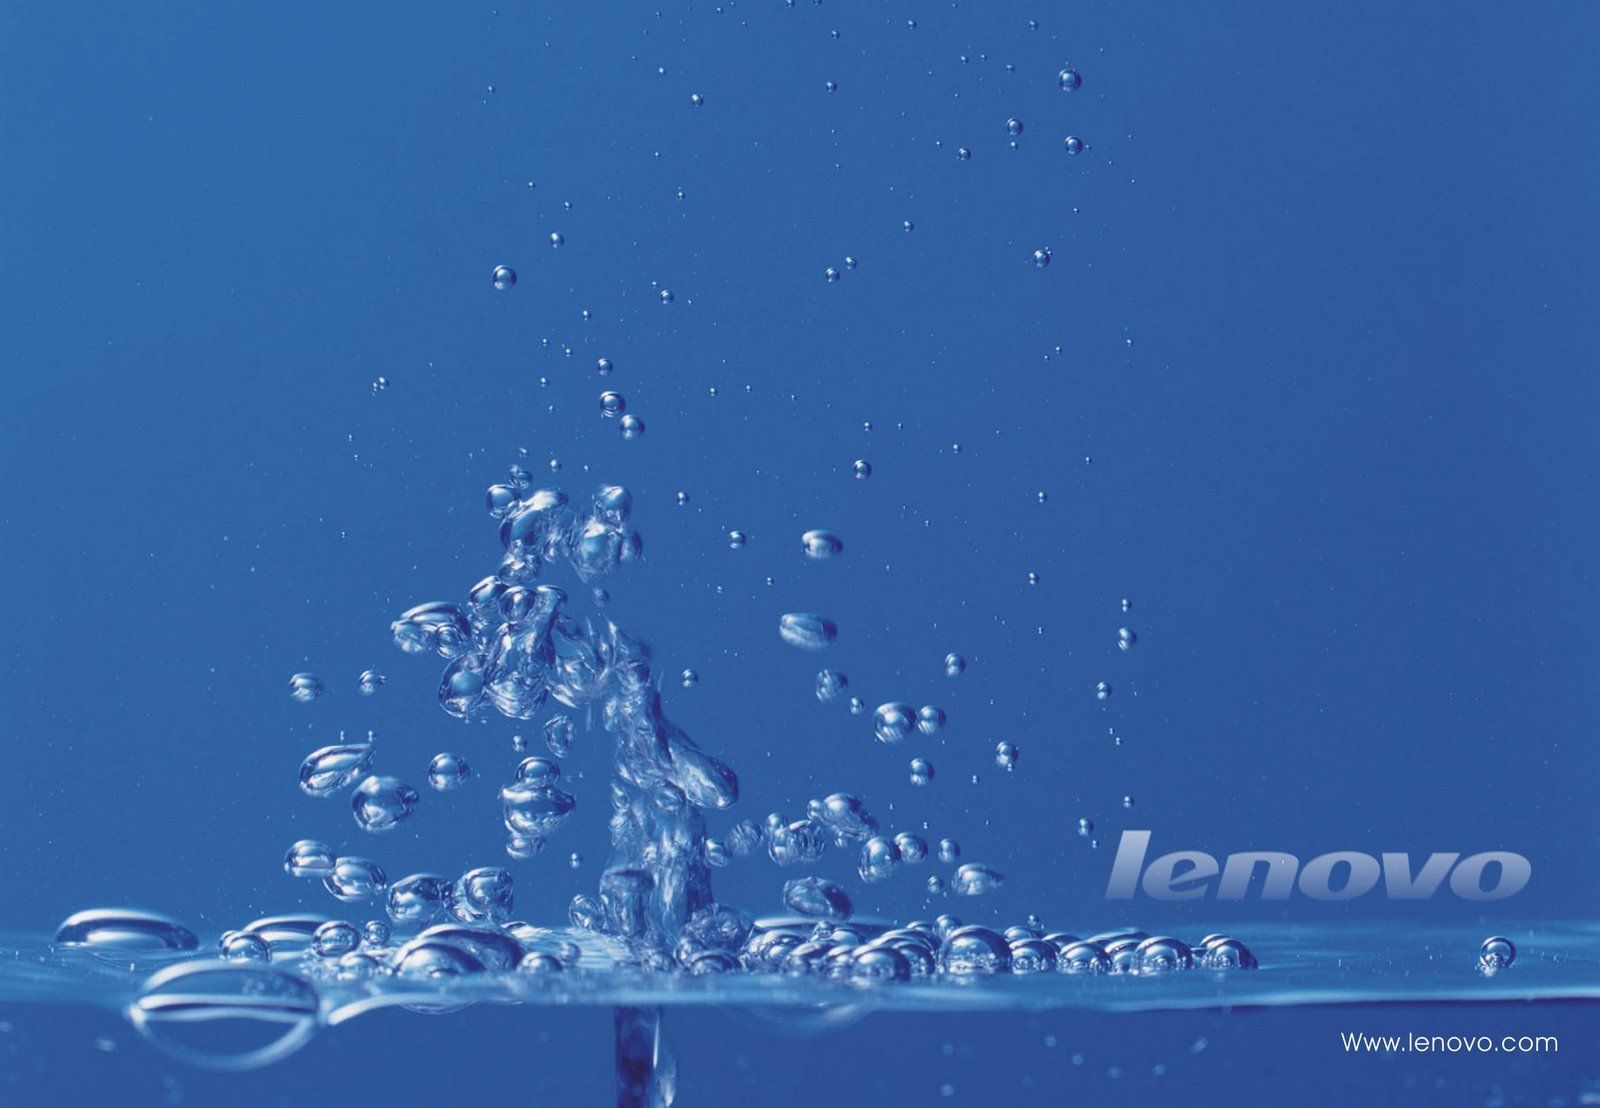 Background Wallpaper For Lenovo - HD Wallpaper 